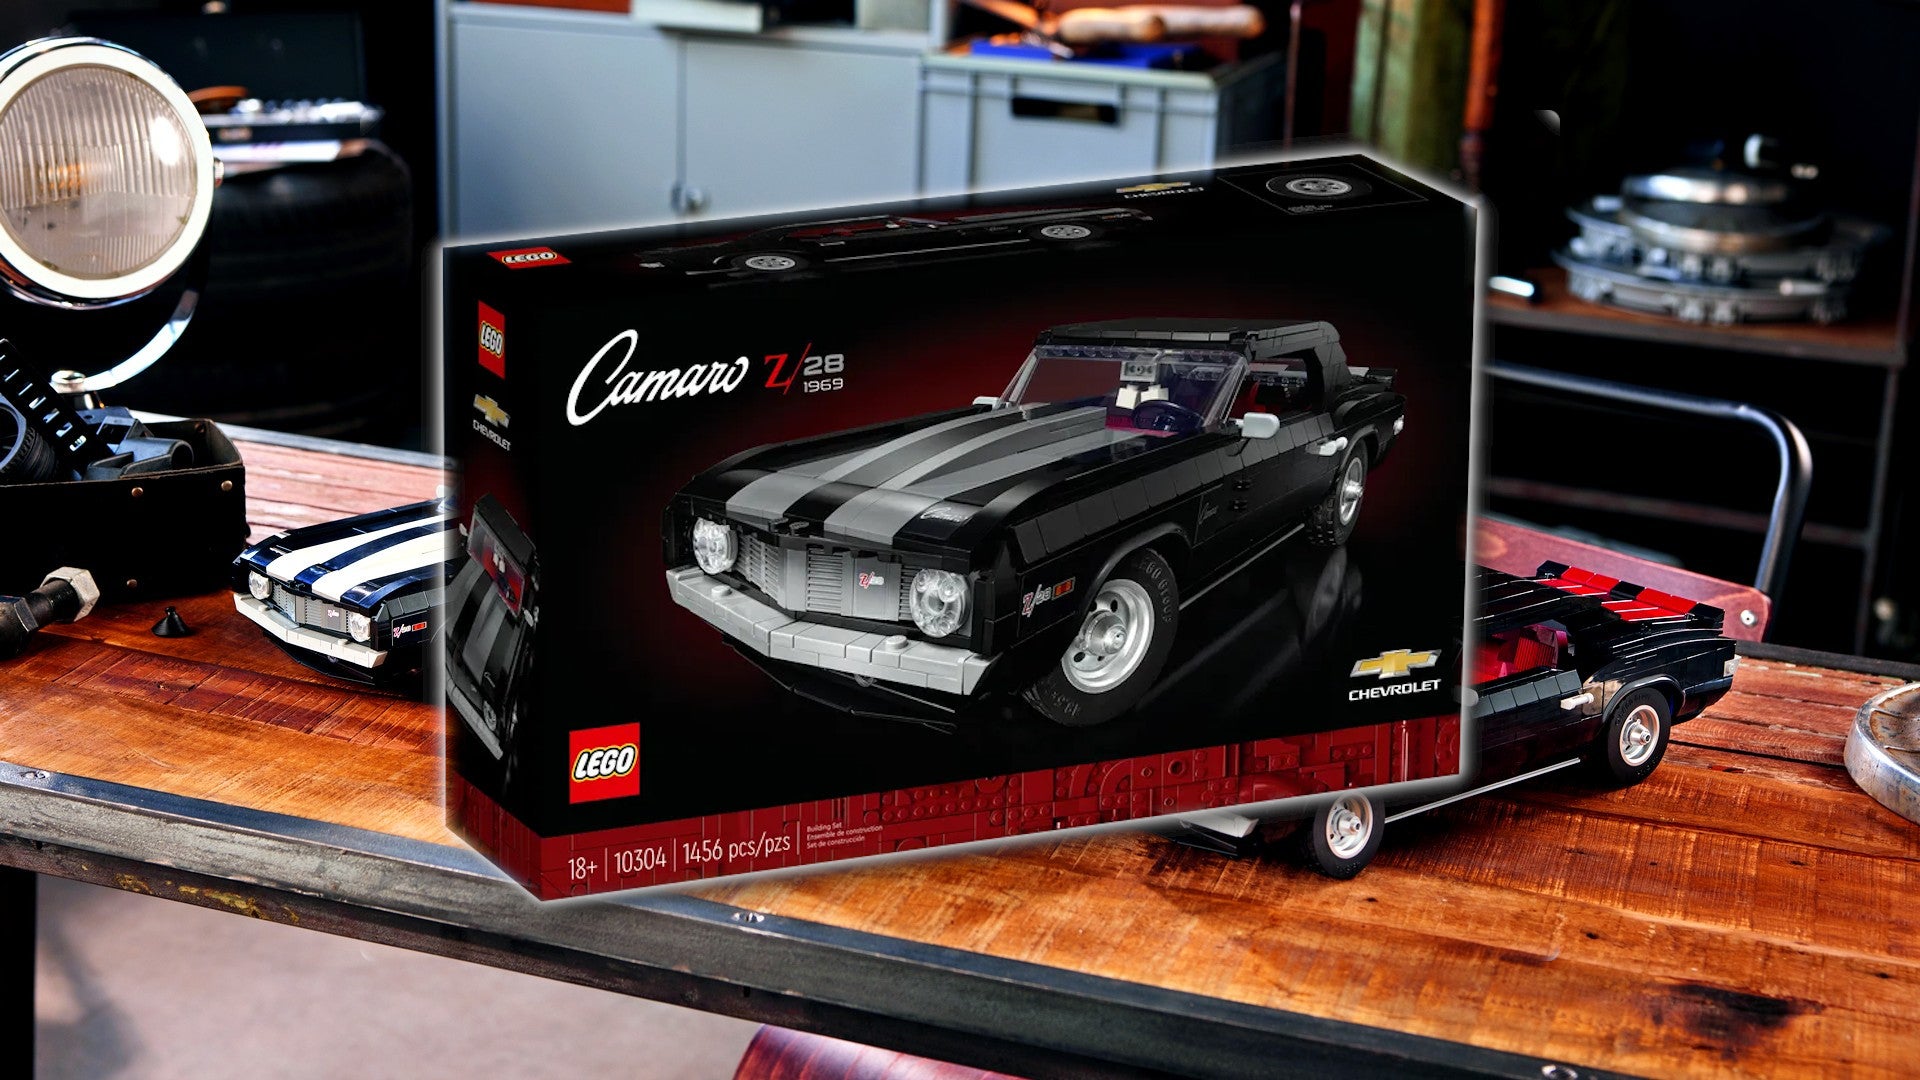 Bilder zu Lego Chevrolet Camaro Z28 ab sofort erhältlich (Update)